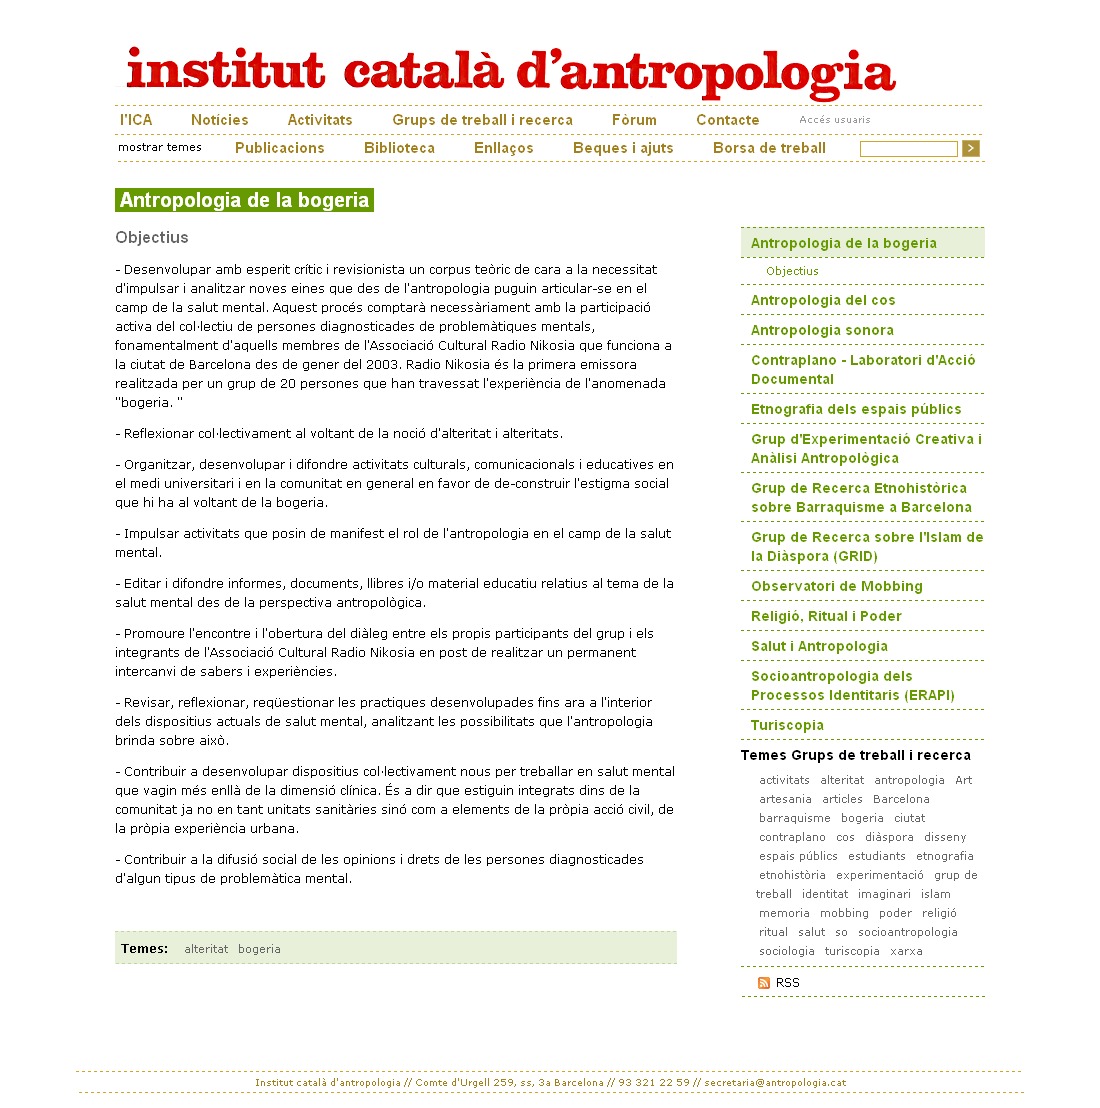 Web de l'Insitut Català d'Antropologia